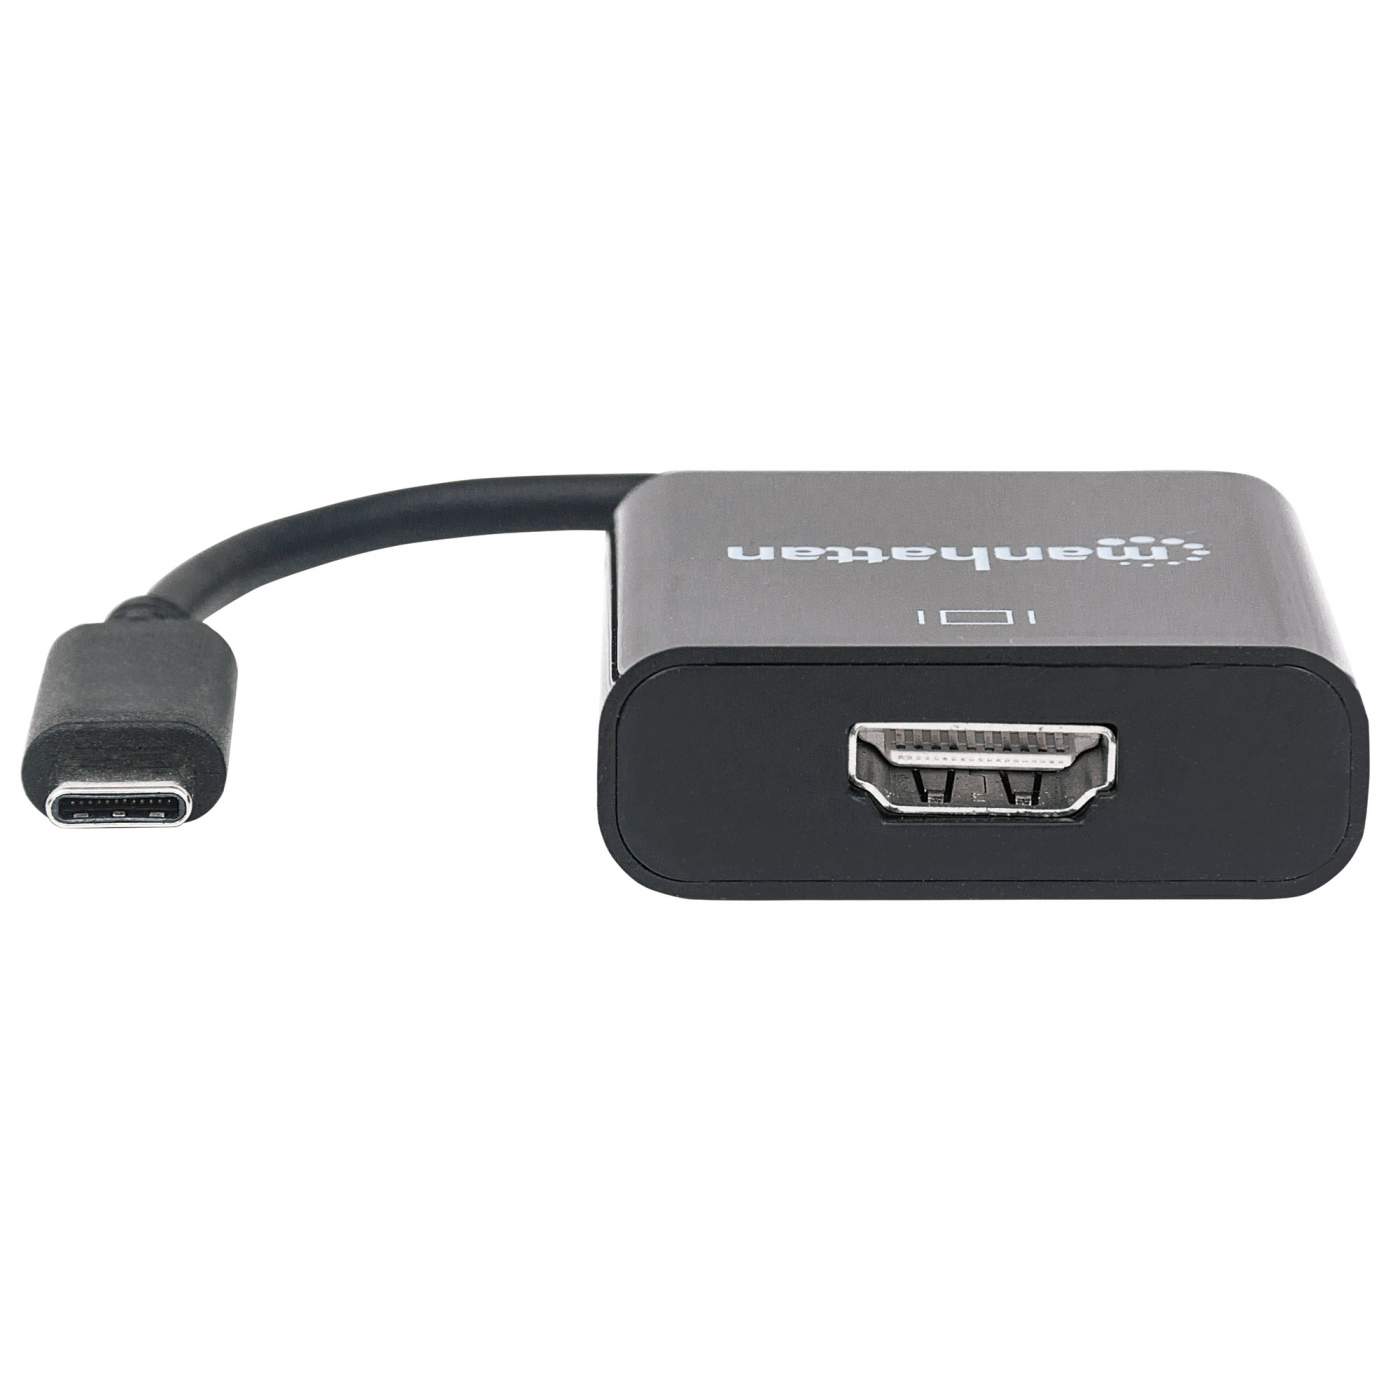 Manhattan 4K@30Hz USB-C to HDMI Adapter (151788)